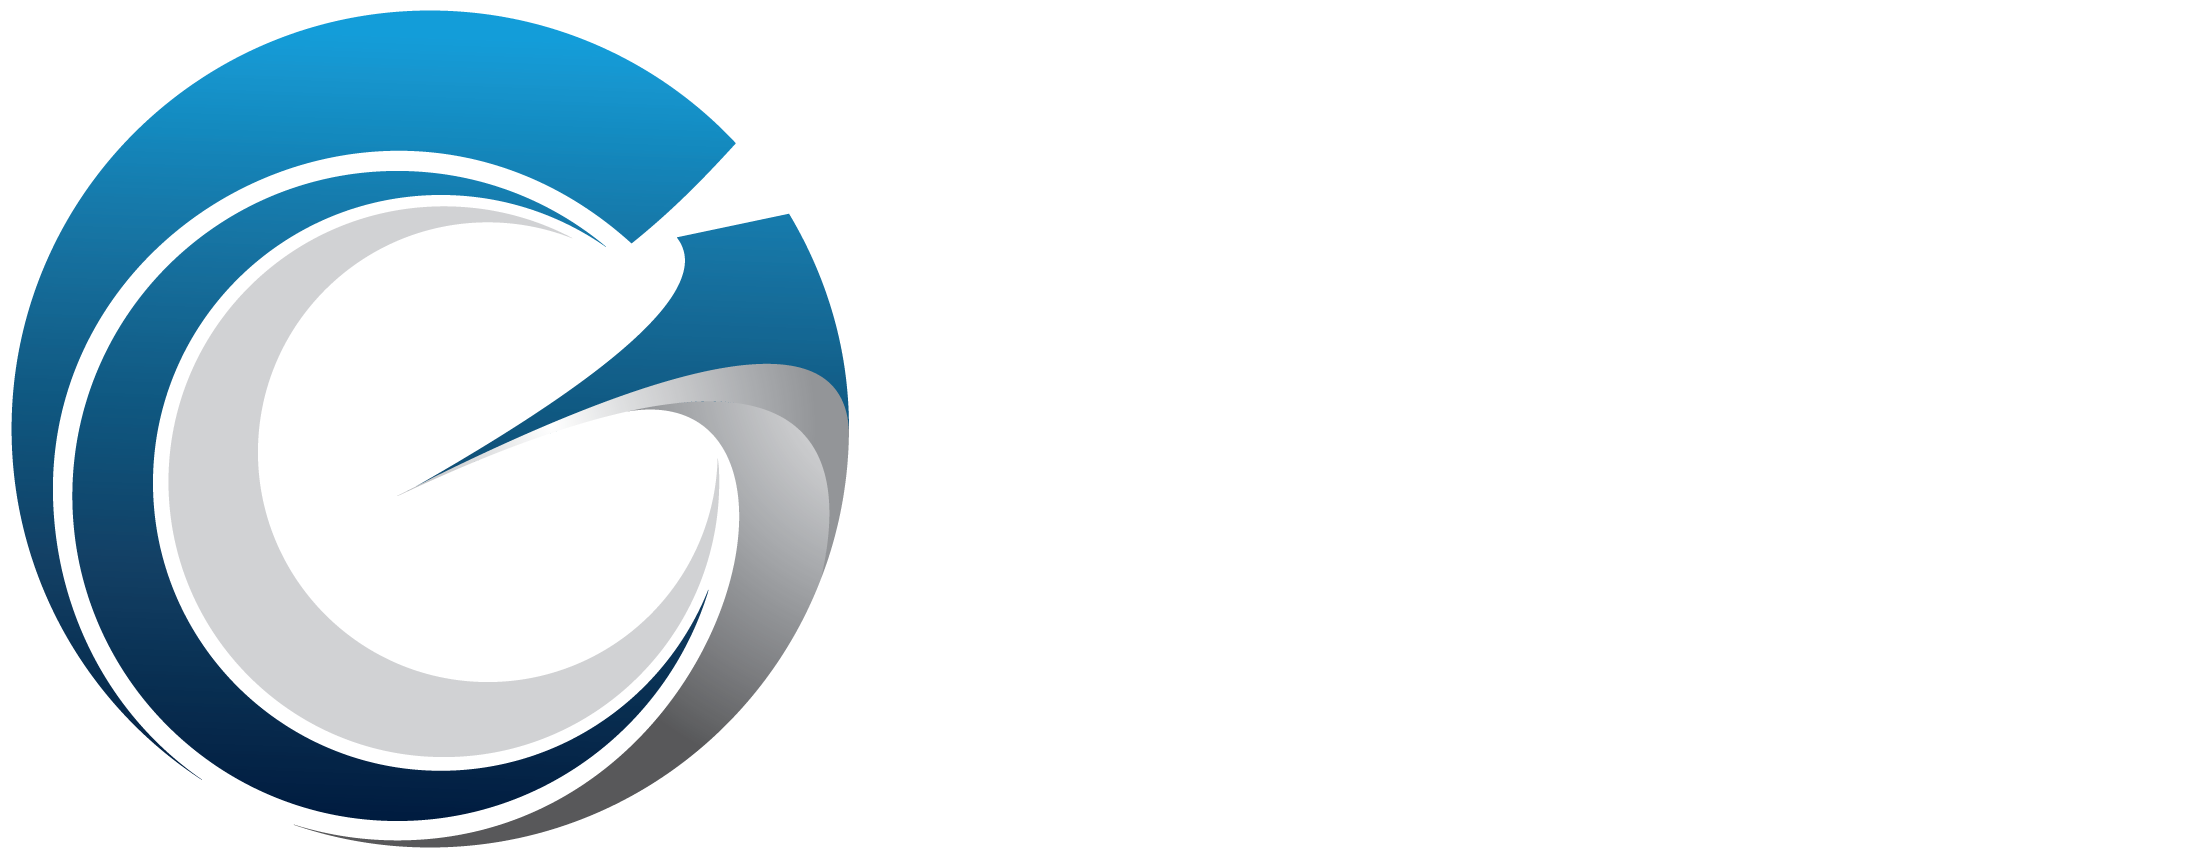 Group-Elite-logo-2020-upper%20left%20web